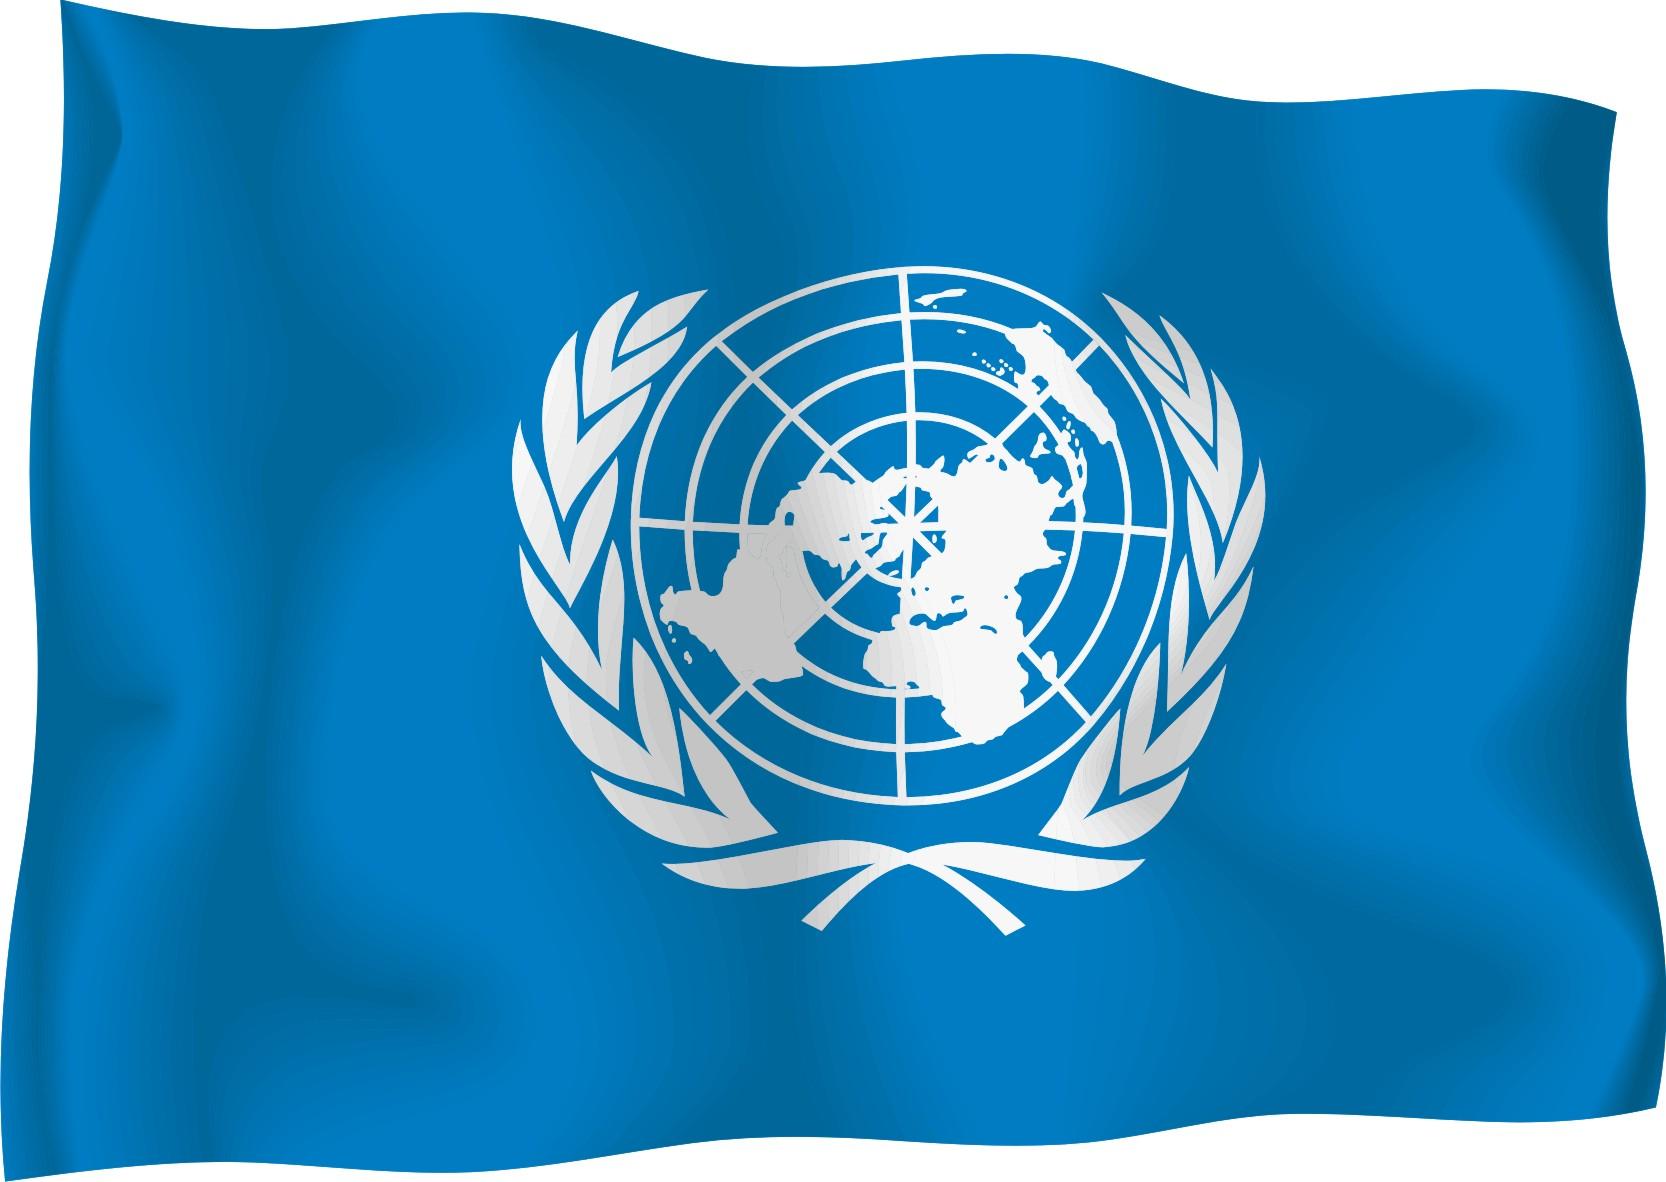 ООН откроет офис в Украине, чтобы обеспечивать имплементацию минских договоренностей